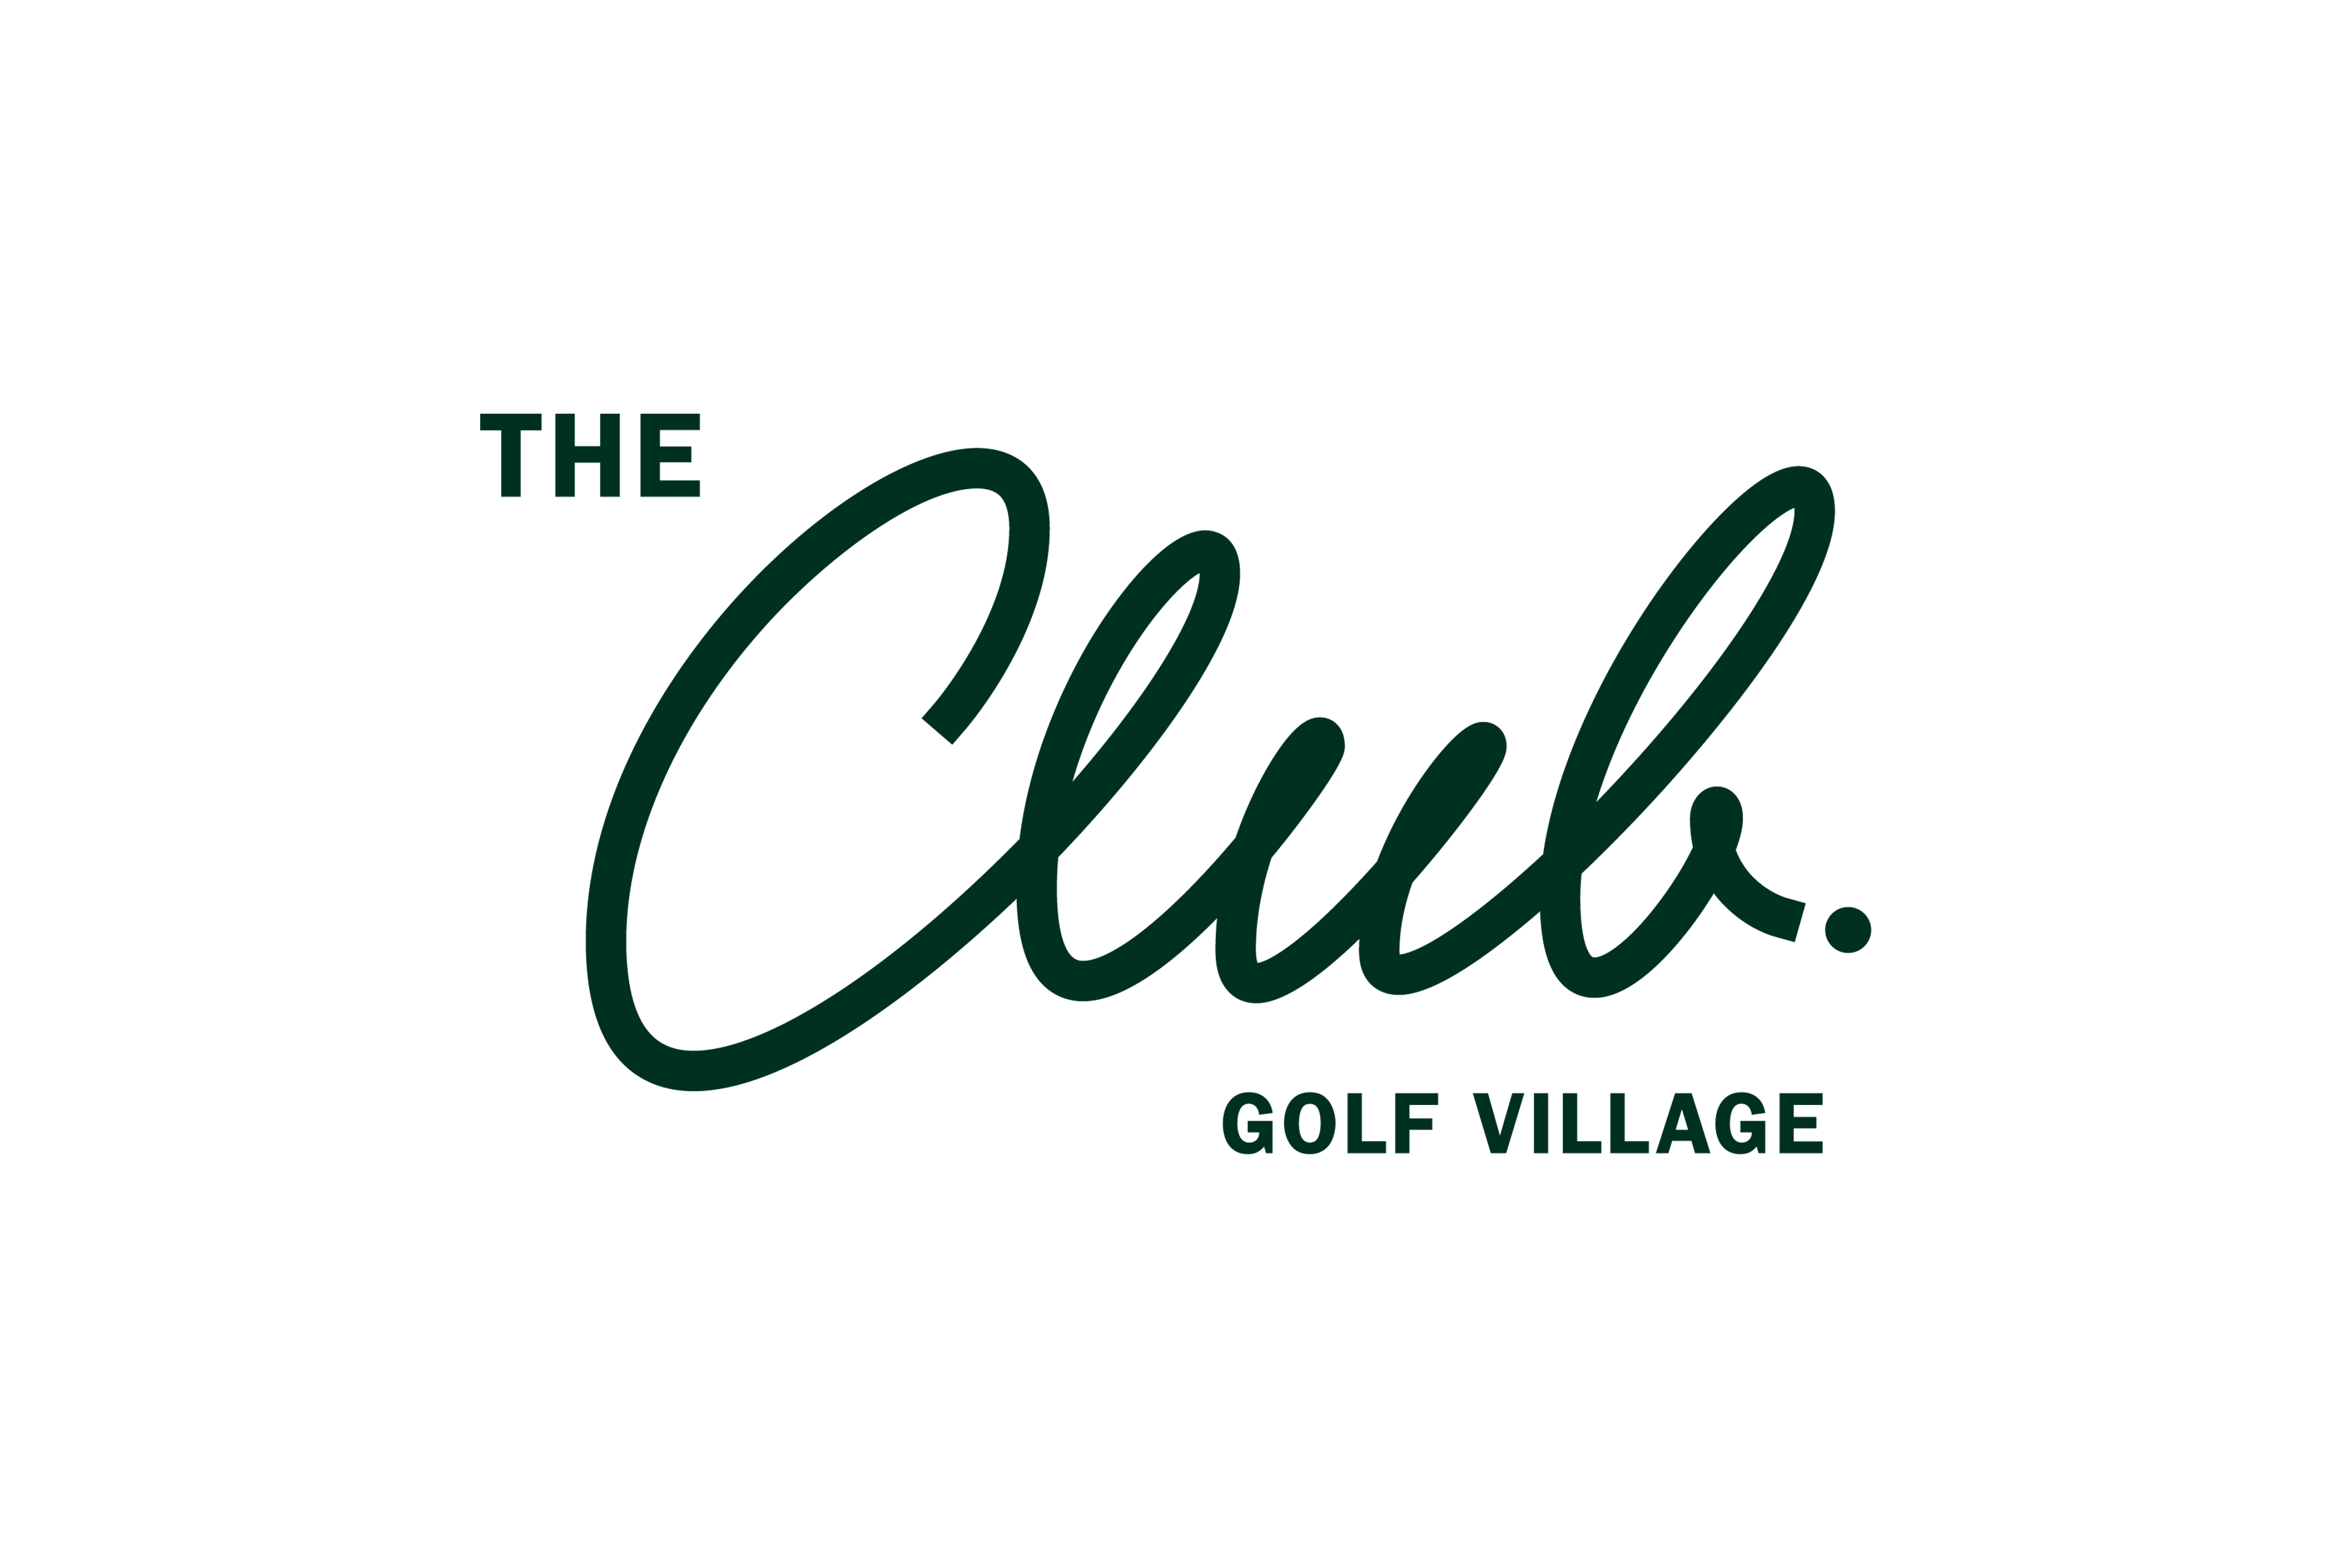 THE CLUB golf village ロゴ